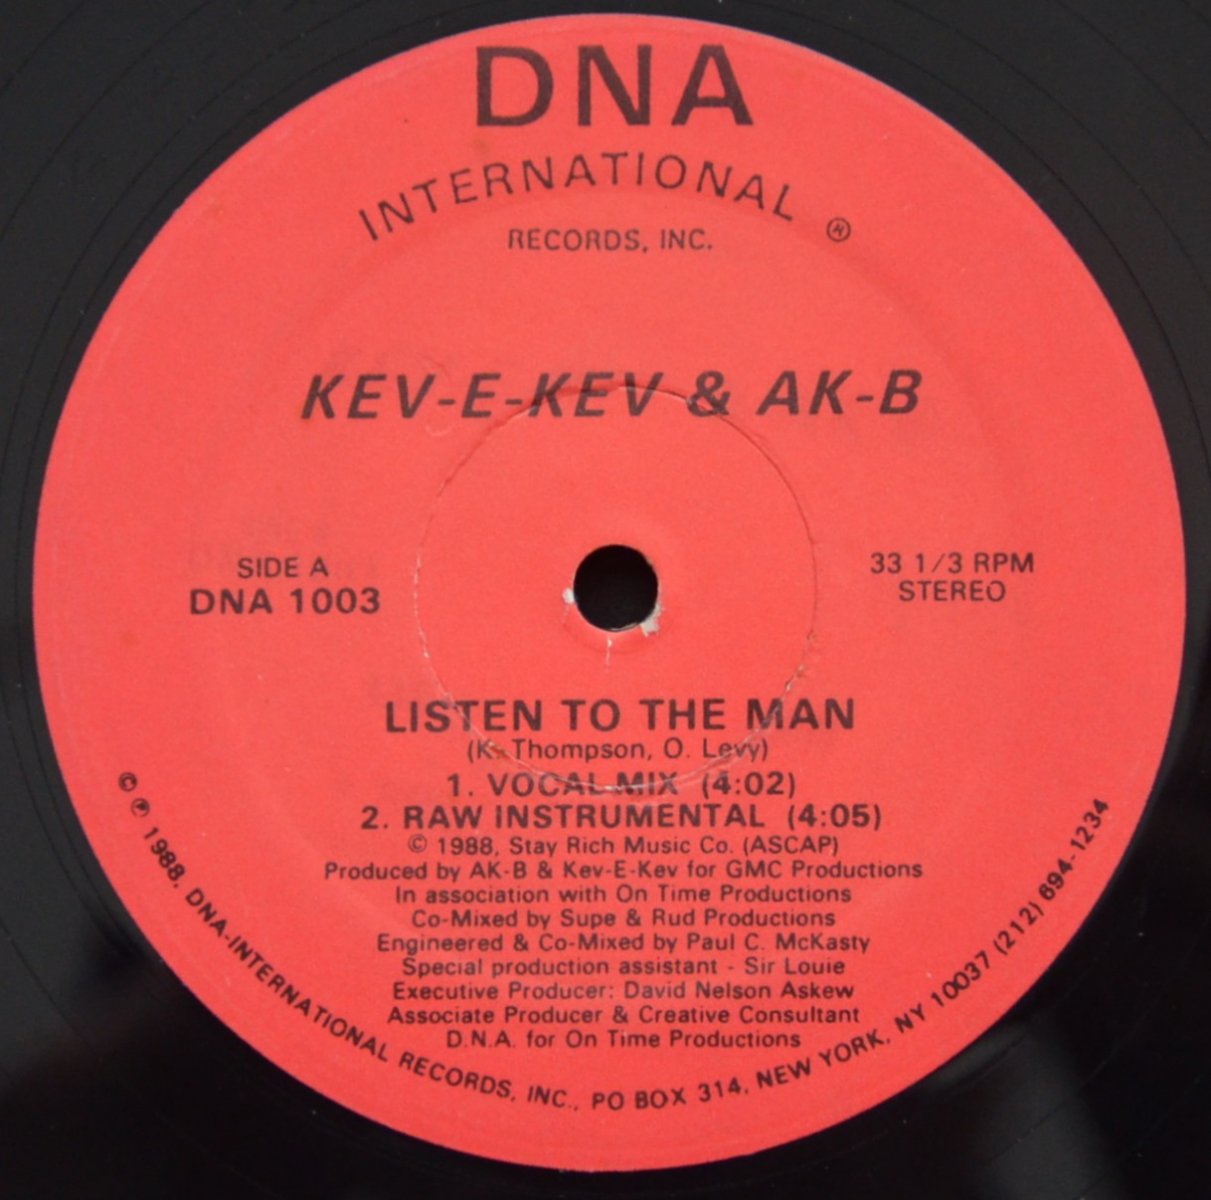 Kev-E-Kev & AK-B - Listen To The Manmiddle